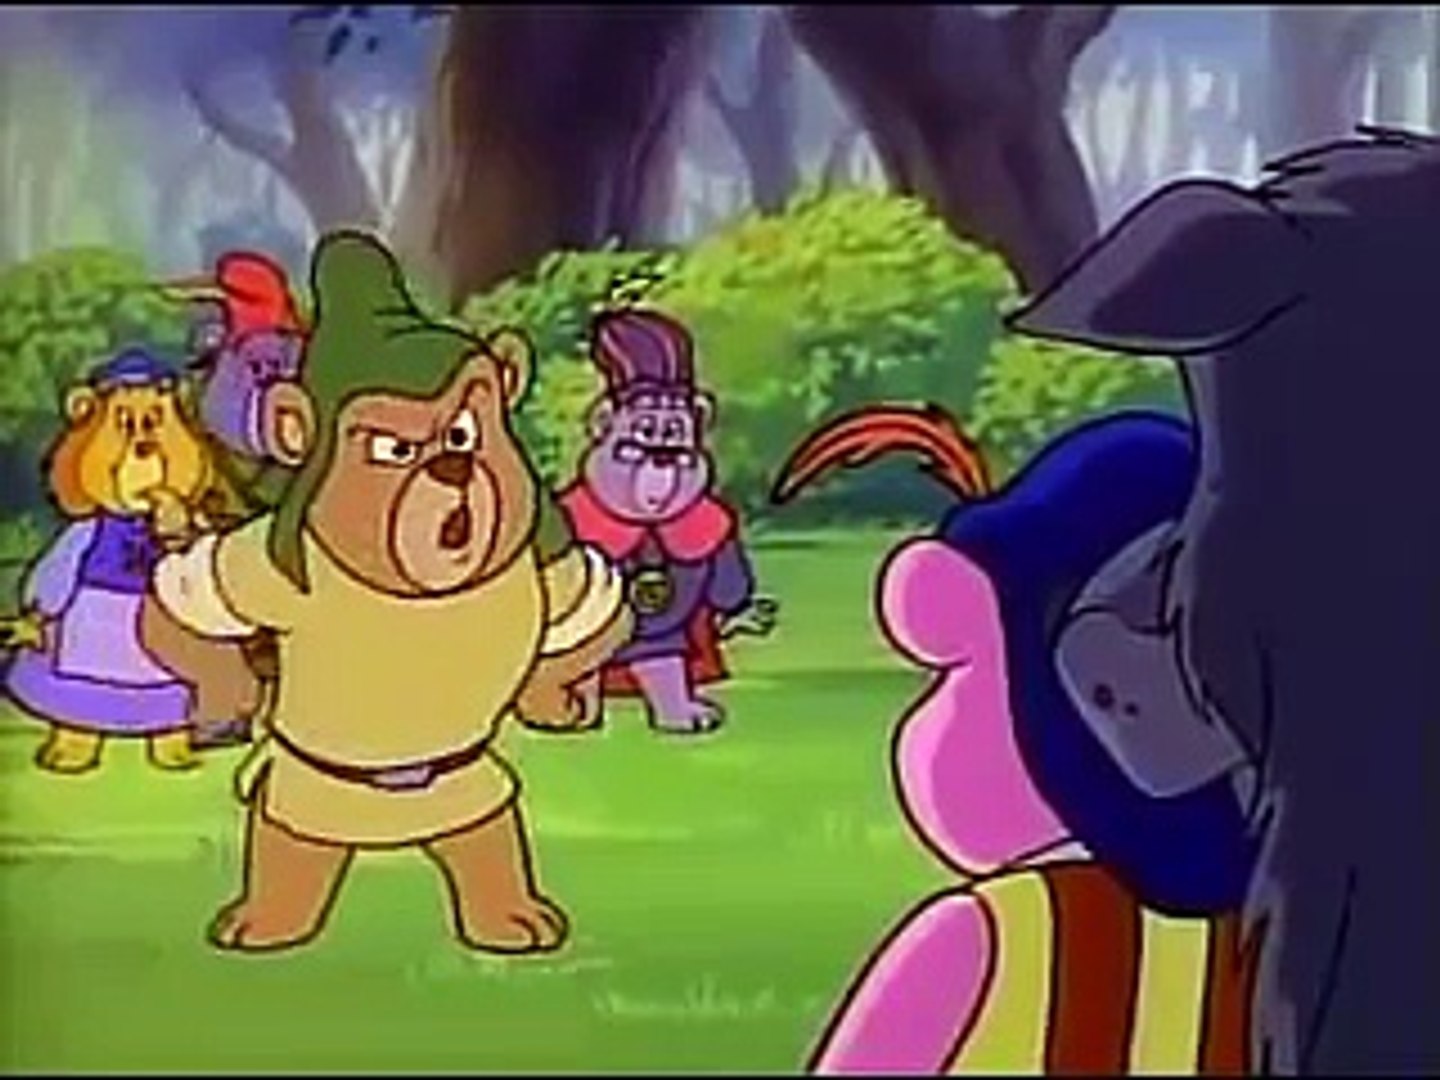 Gummi Bears full episodes 3 hours long - [FULL SERIES